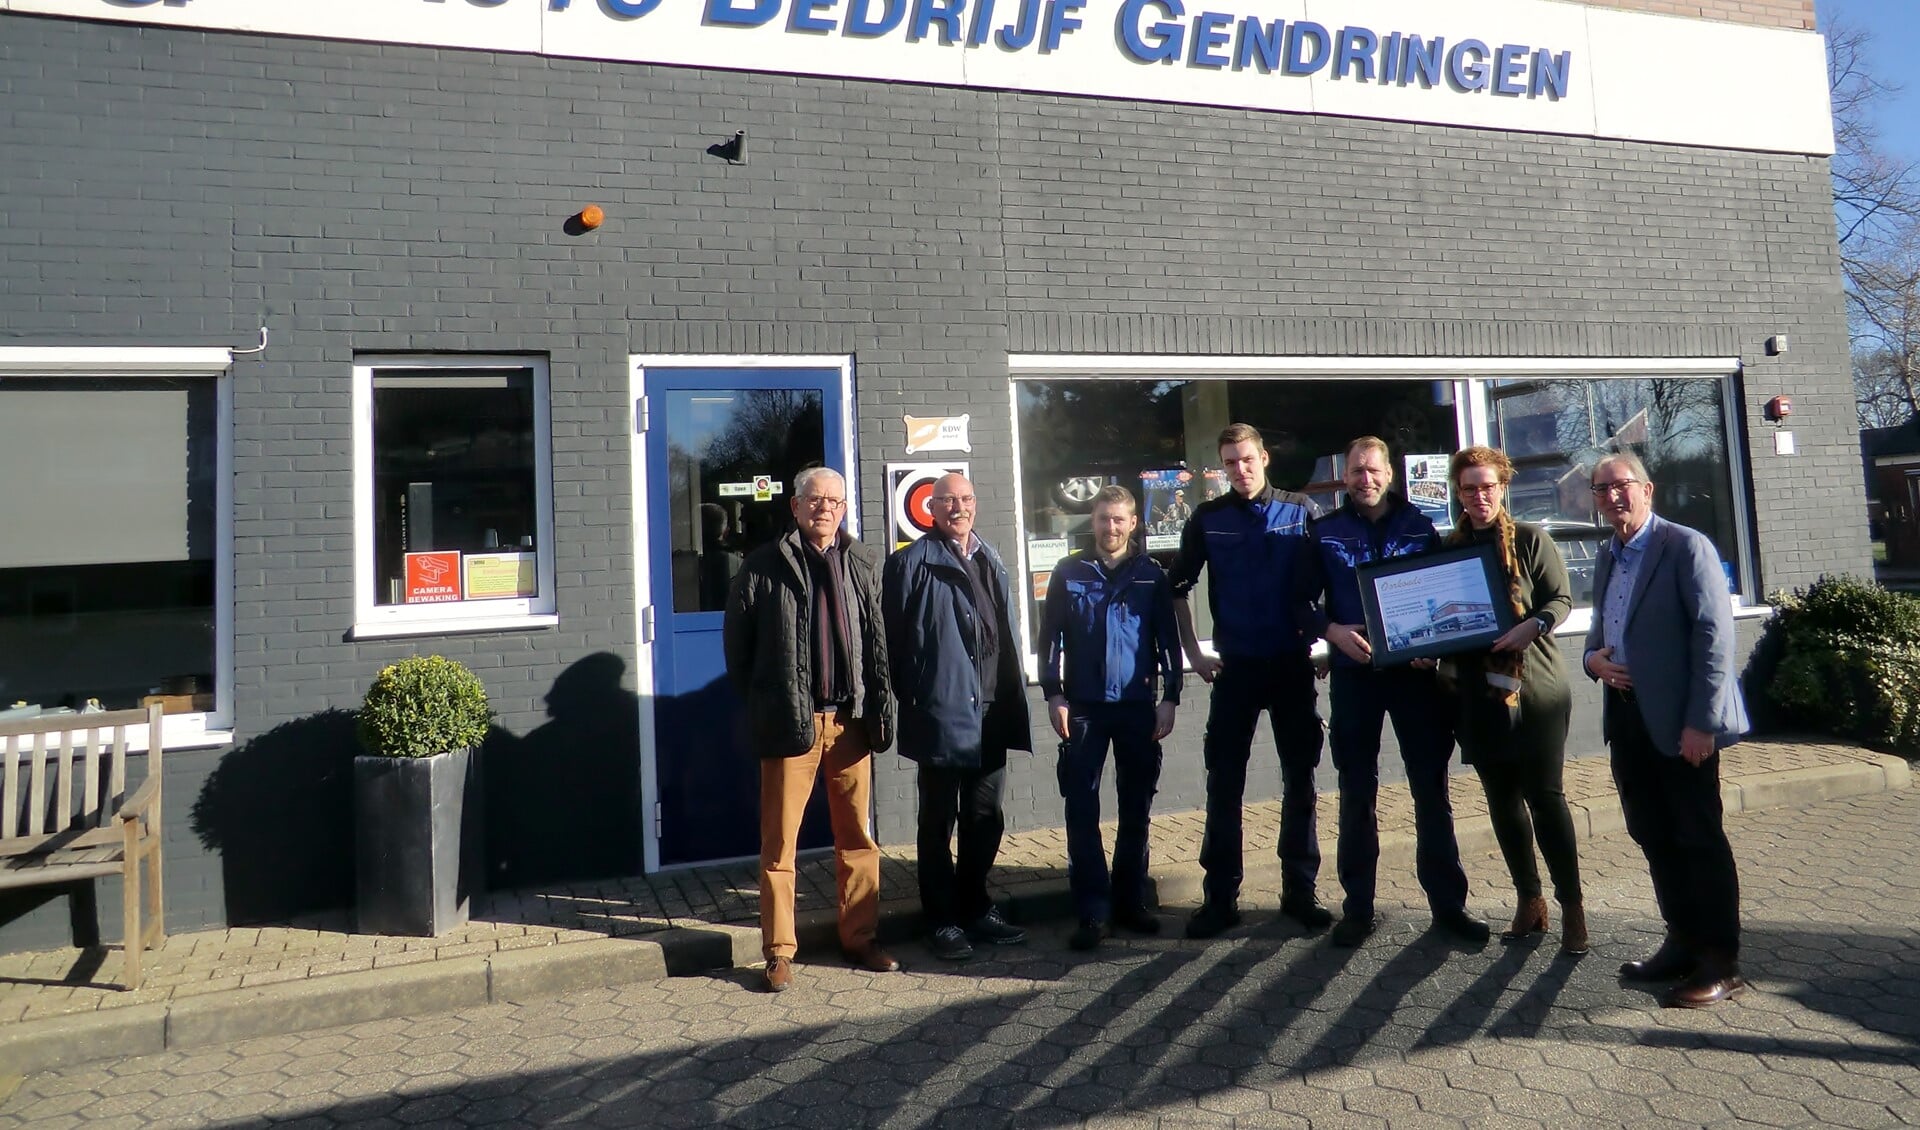 Het bestuur van stichting Gendringen Leefbaar en het team van Auto Bedrijf Gendringen (Frank Bruens was afwezig). Foto: Walter Hobelman